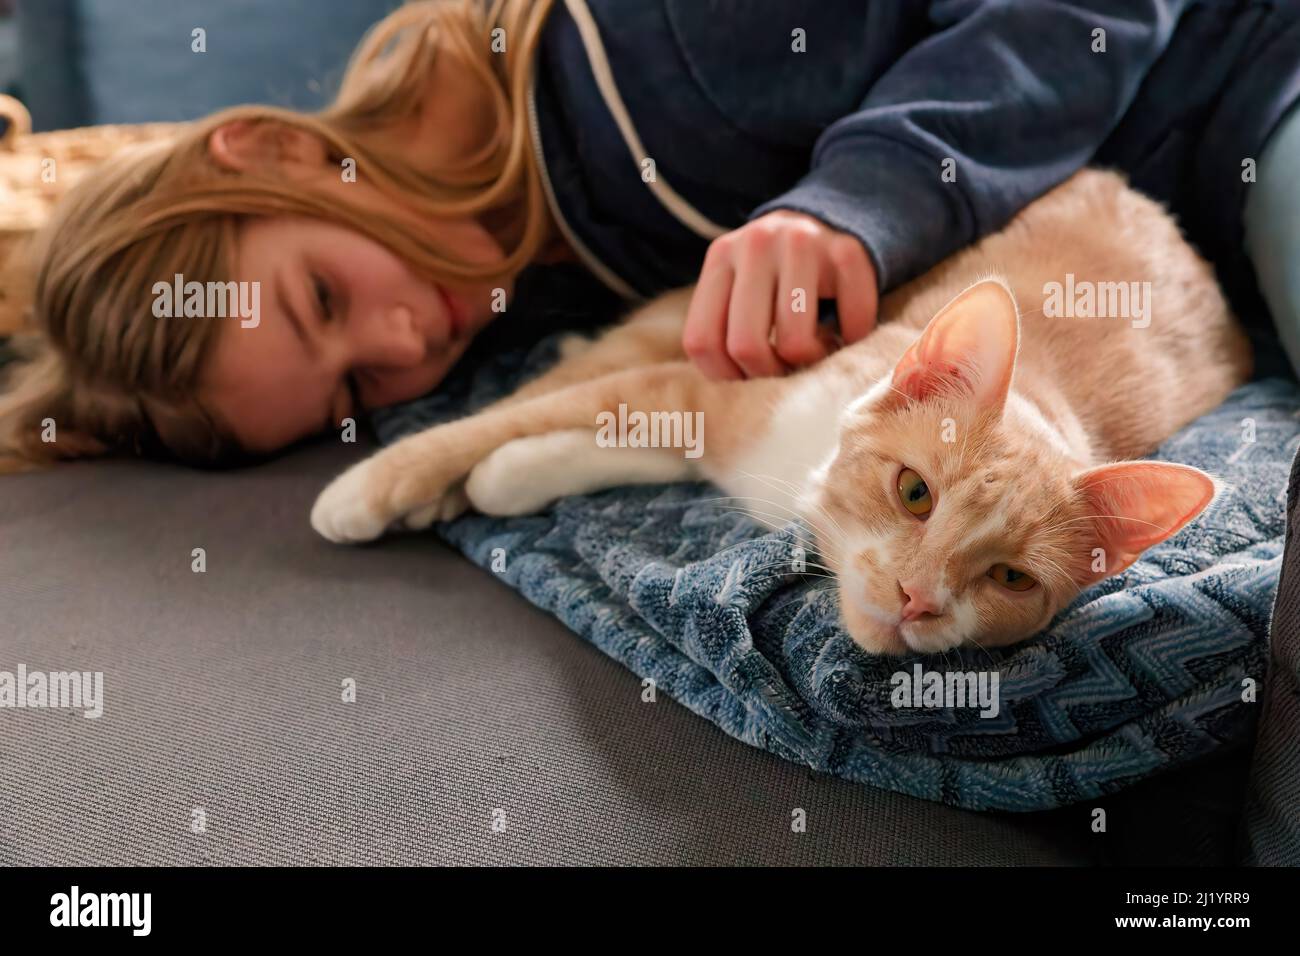 Une jeune adolescente allongé sur un canapé trouve le confort en se blottant près de son chat et en le caressant Banque D'Images